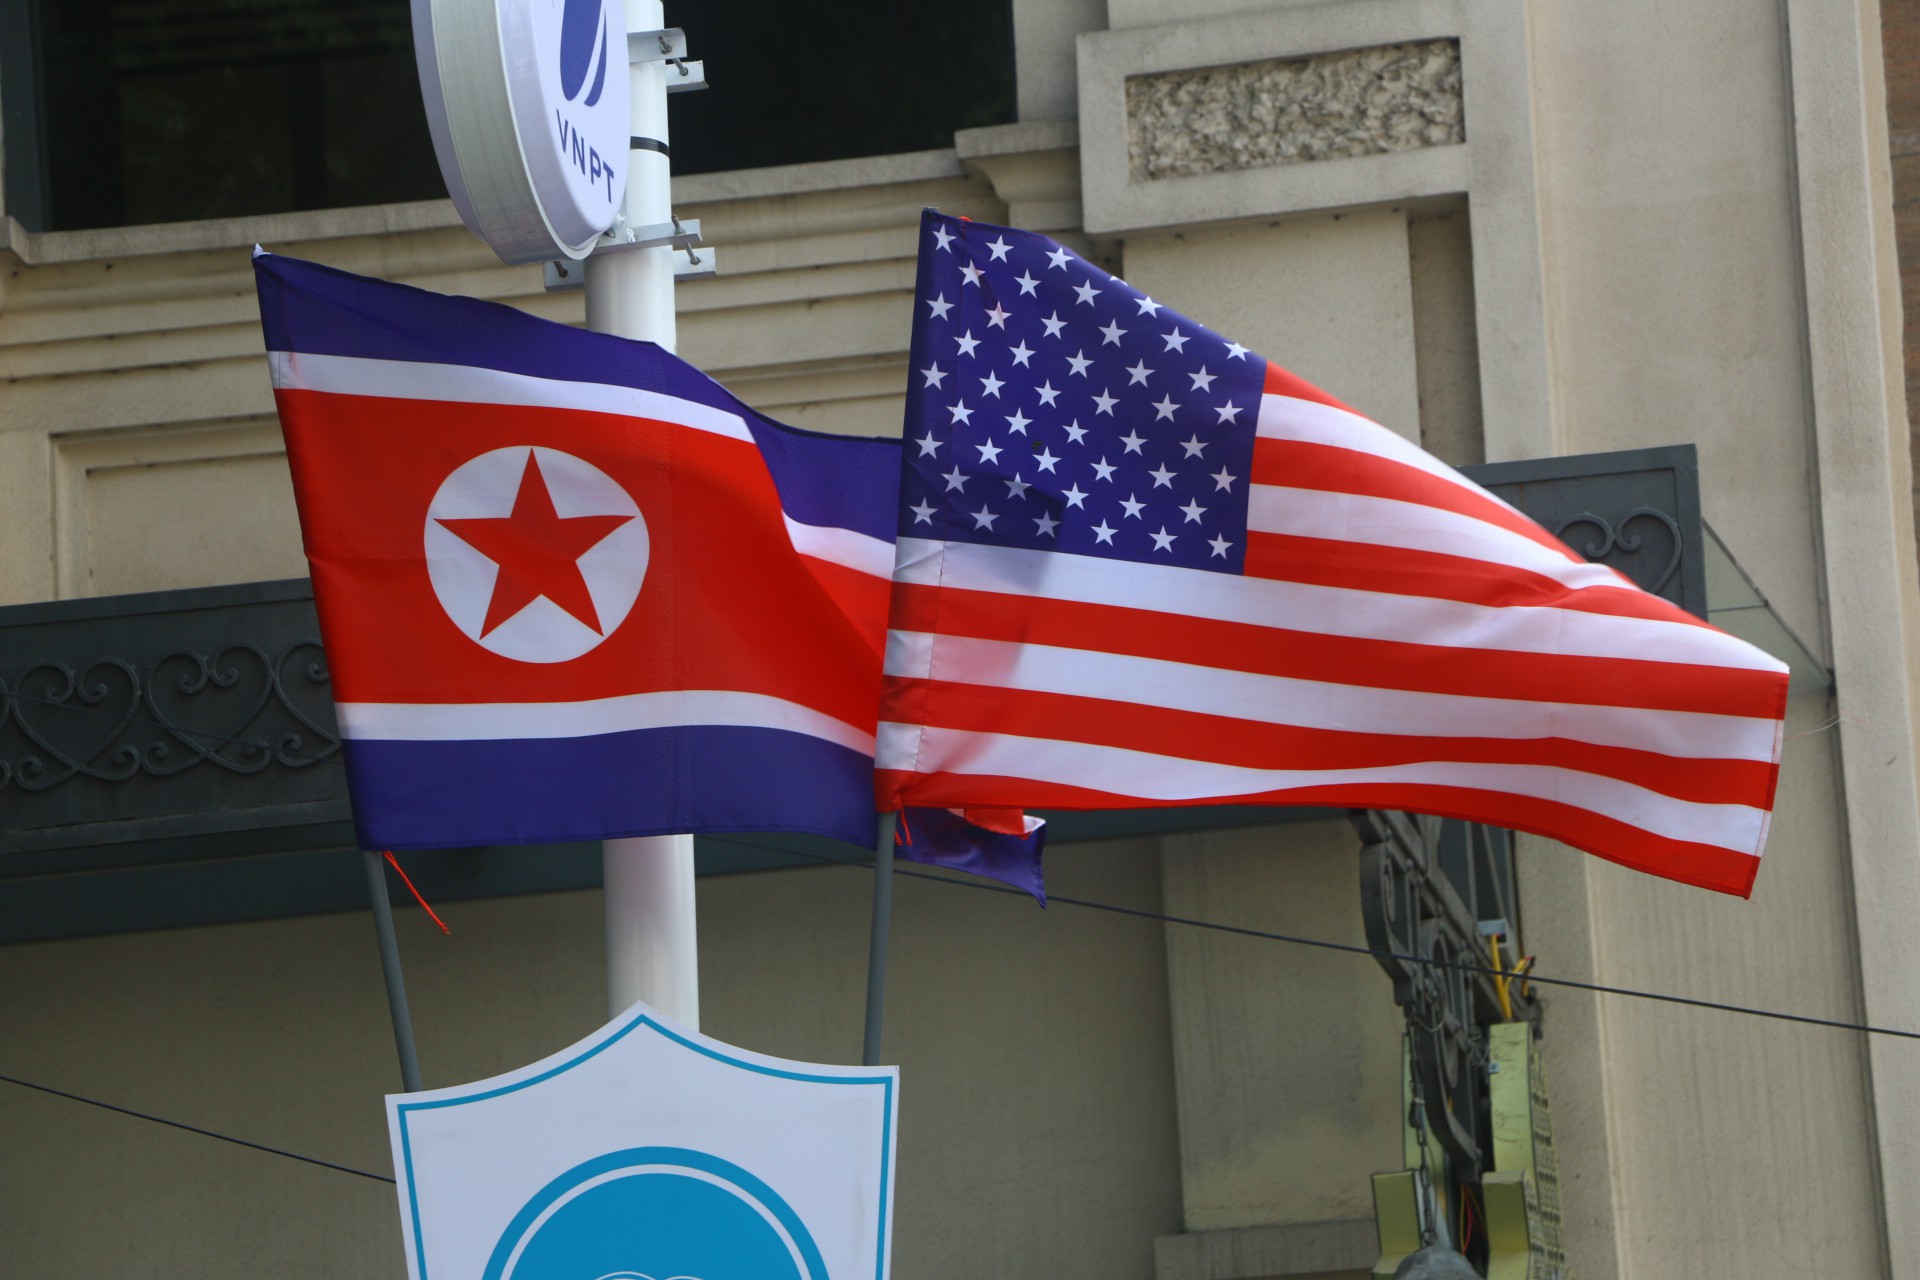 Cờ Mỹ - Triều Tiên: Với nỗ lực của cả hai bên trong việc hòa giải, mối quan hệ giữa Mỹ và Triều Tiên đã cải thiện đáng kể trong những năm gần đây. Hai nước đã cùng nhau tham gia vào nhiều hoạt động kinh tế, chính trị, và ngoại giao mang tính lịch sử. Hãy xem những hình ảnh độc đáo về cờ Mỹ và Triều Tiên để hiểu rõ hơn về sự tiến bộ của mối quan hệ giữa hai nước này.